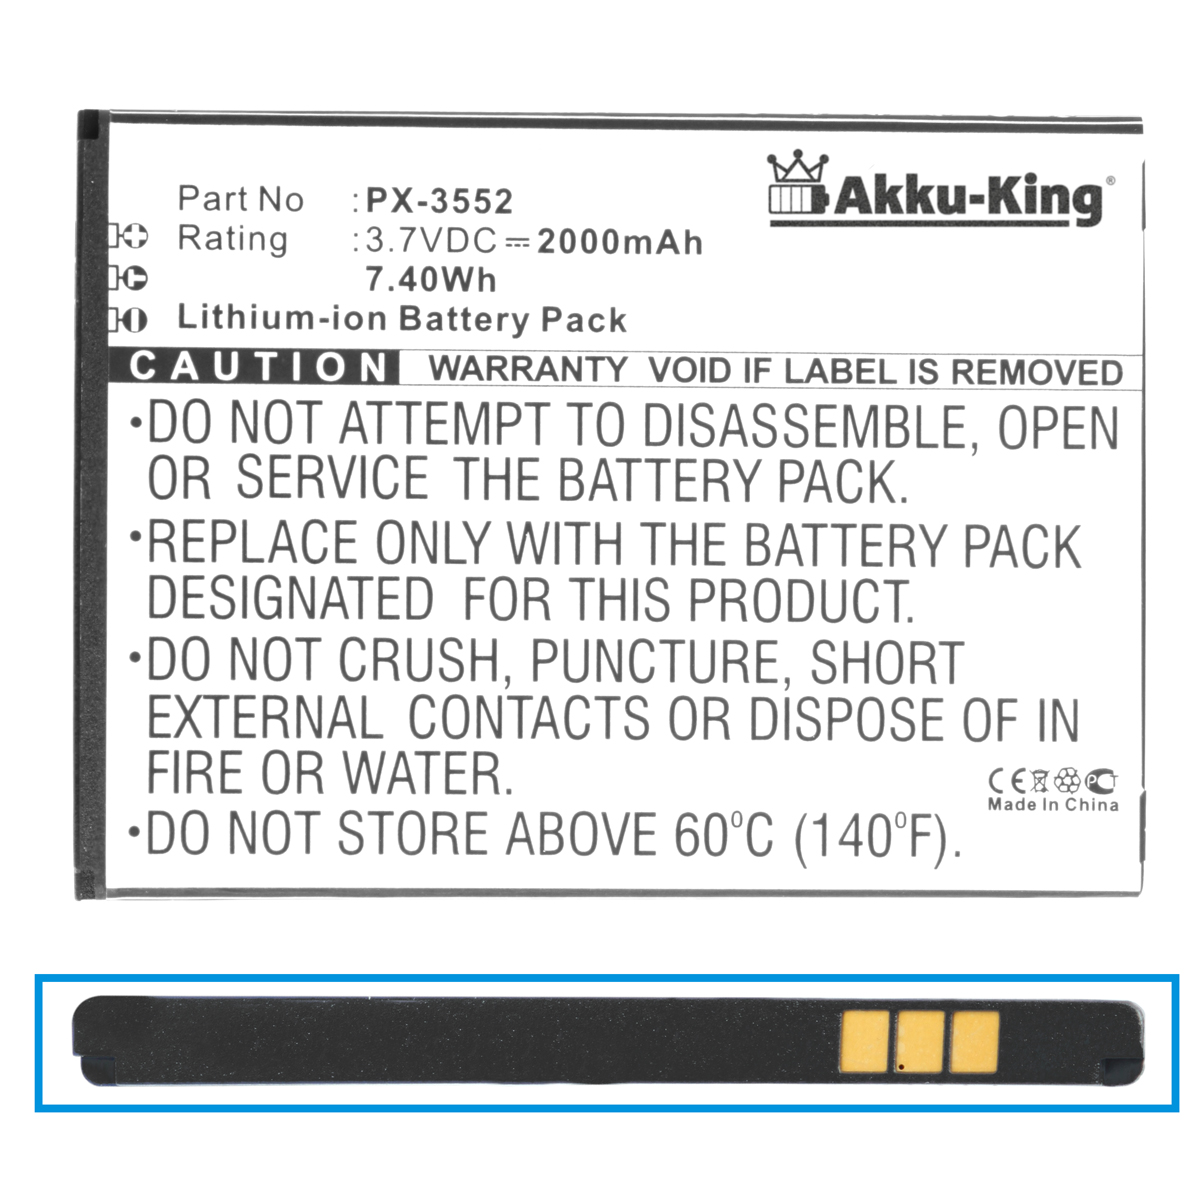 AKKU-KING Akku kompatibel mit Simvalley Li-Ion 3.7 PX-3552 Volt, 2000mAh Handy-Akku